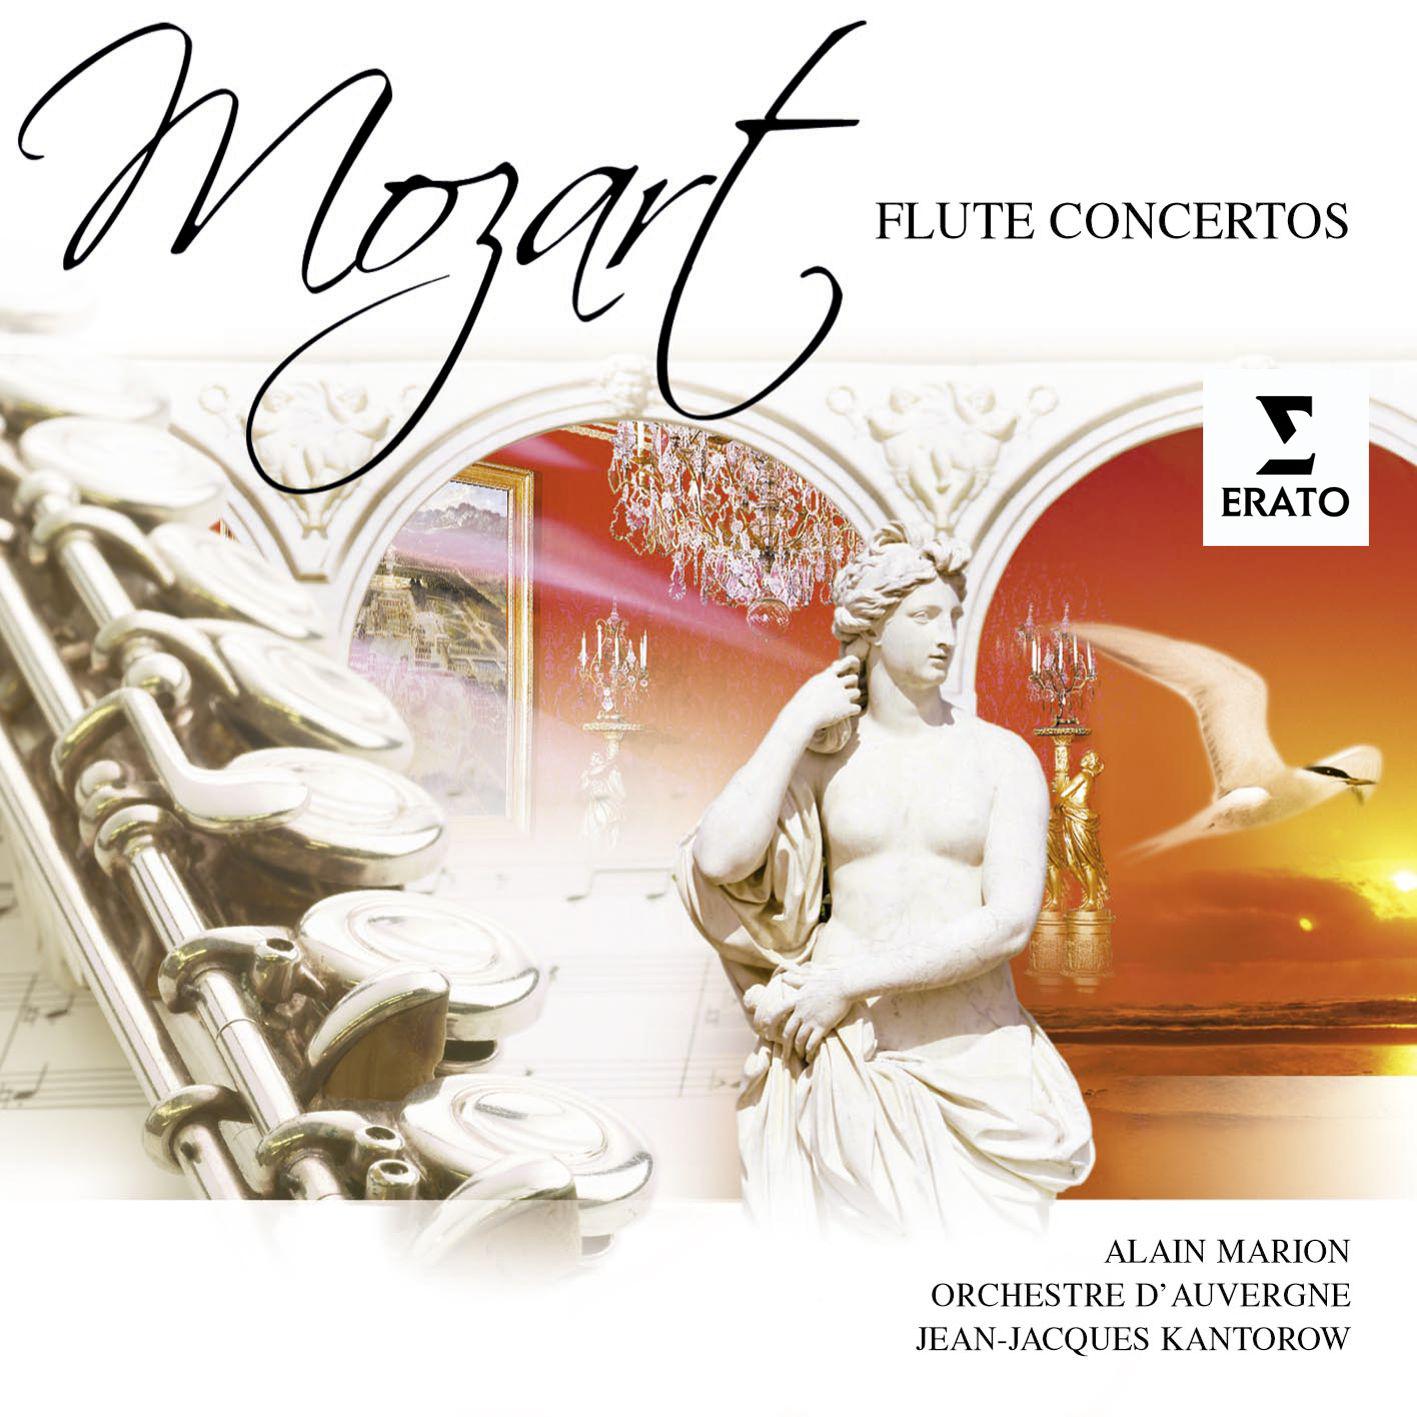 Flute Concerto No. 1 in G K313/285c: I. Allegro maestoso